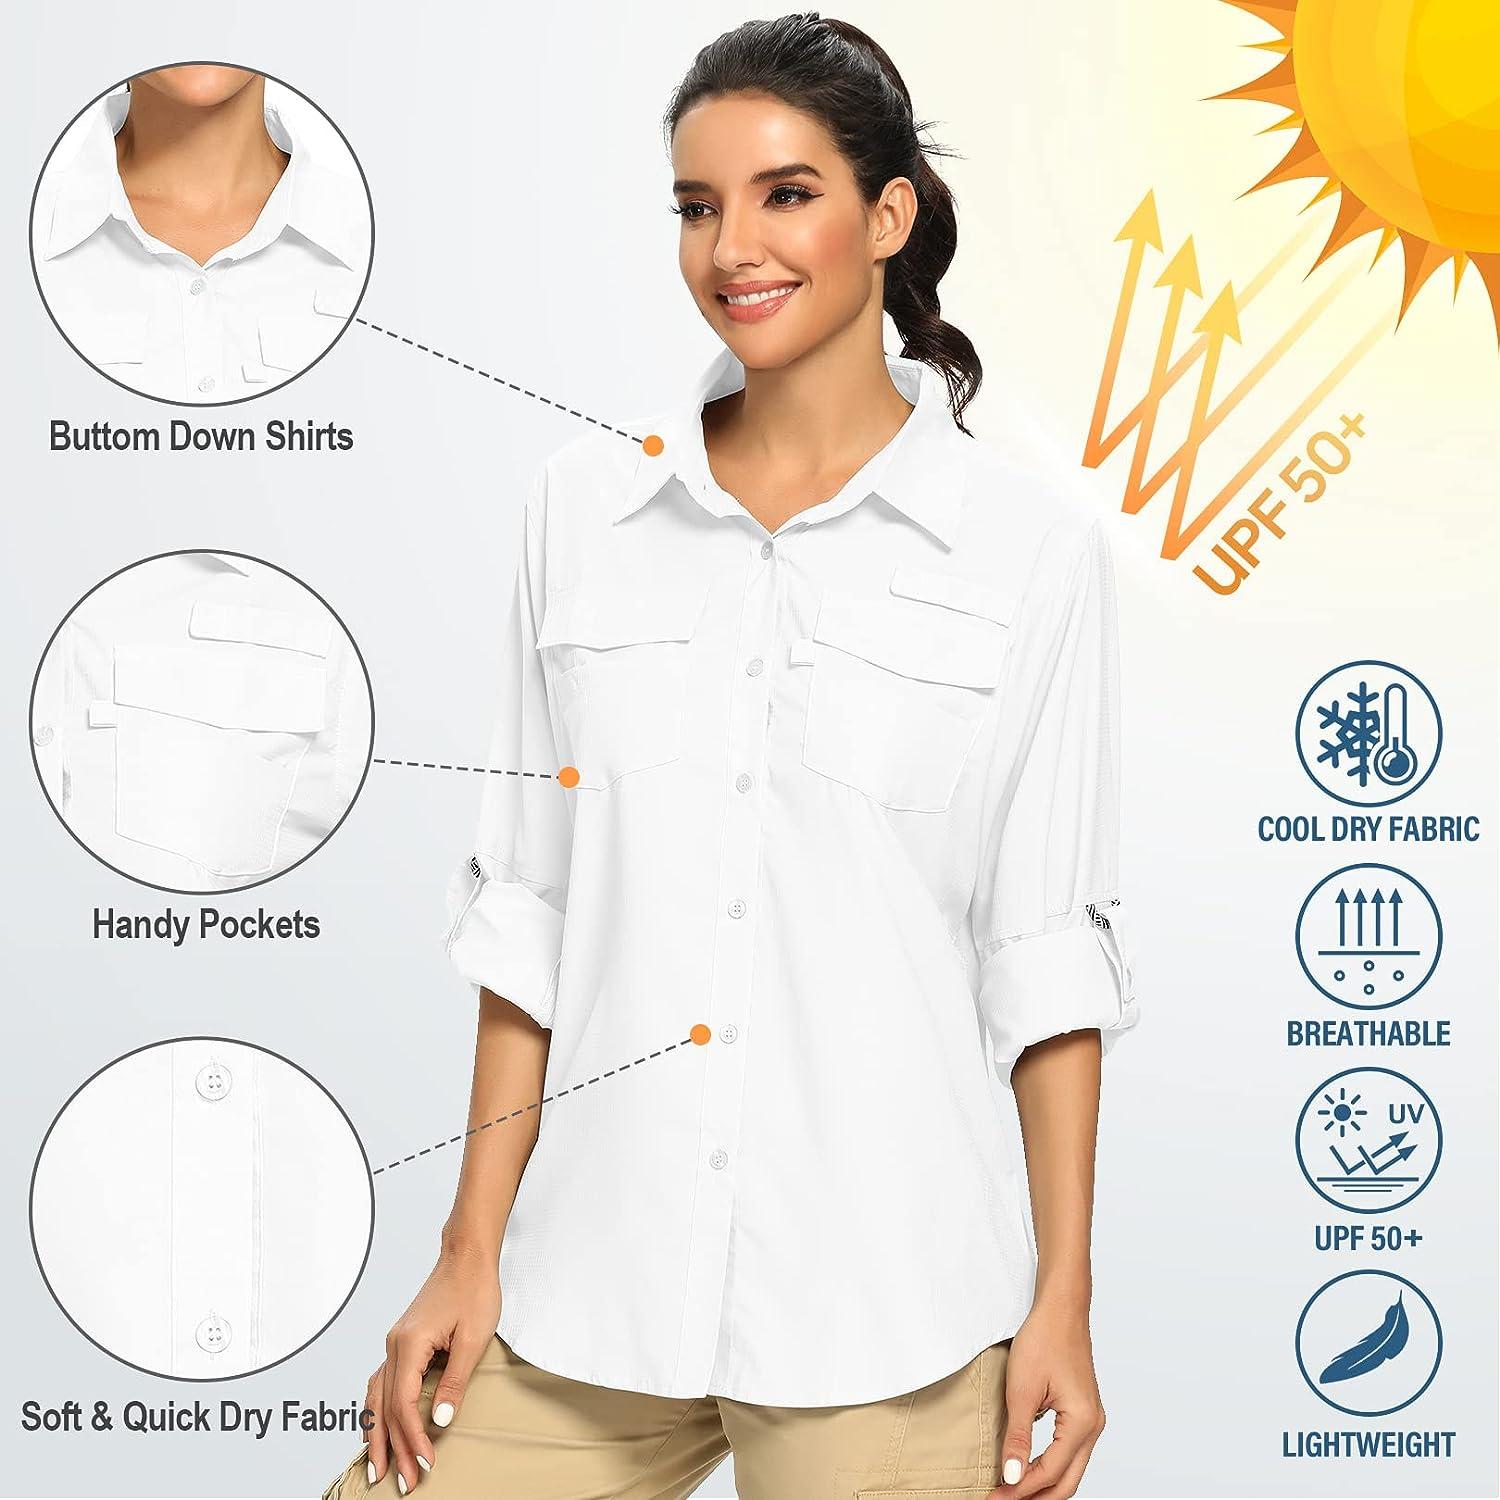 Huaai Womens Plus Size Casual Tops UPF 50+ Sun Long Sleeve Outdoor Shirts Cool Quick Dry Fishing Hiking Shirt Khaki M, Women's, Size: Medium